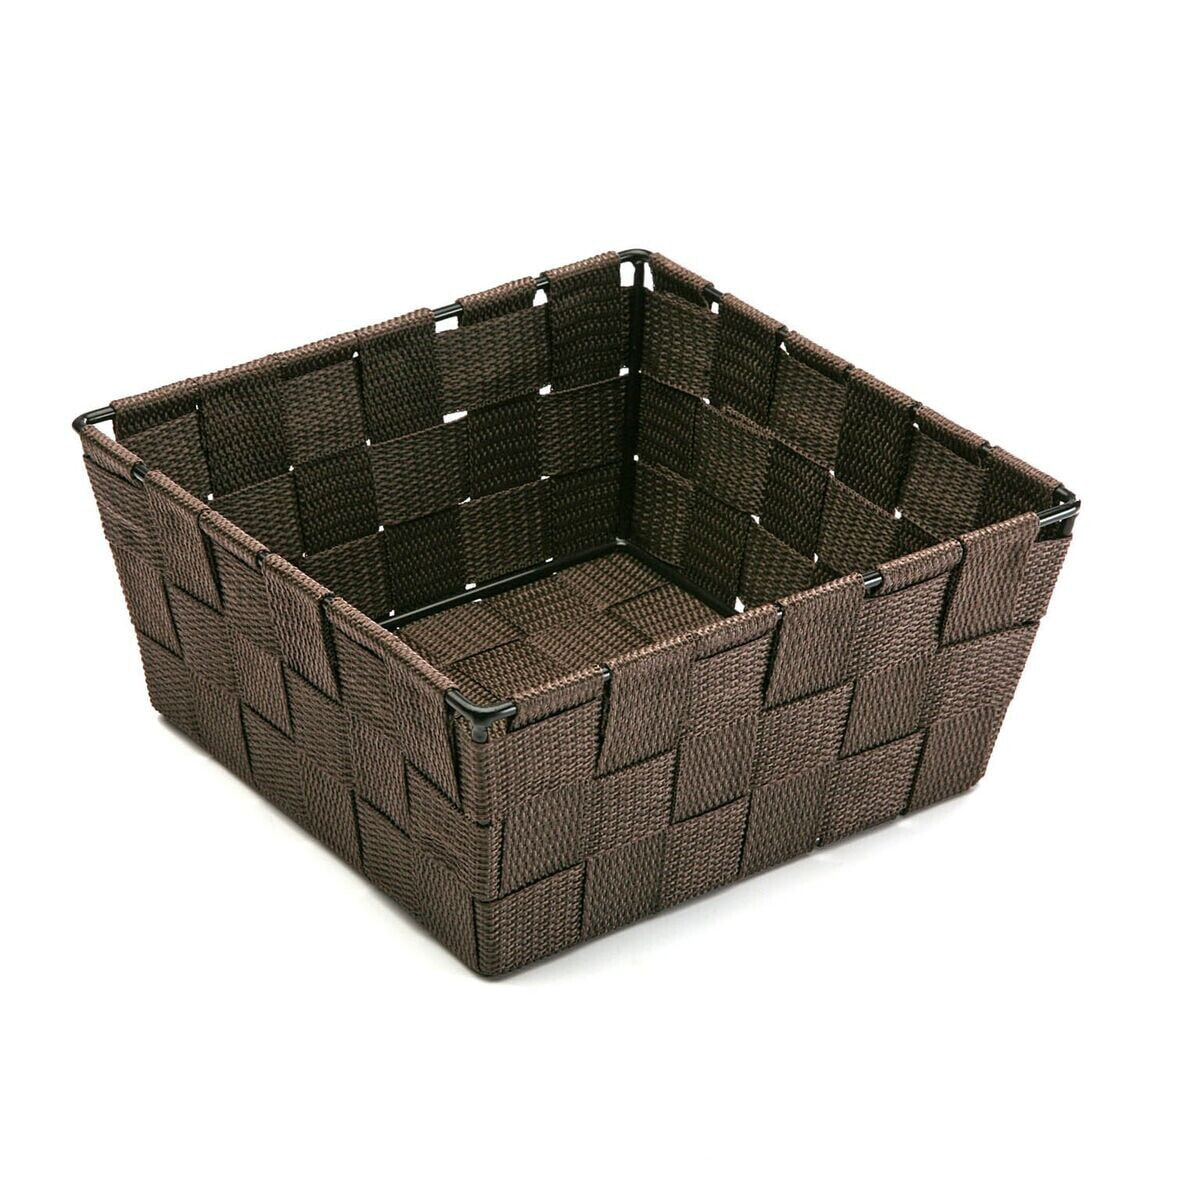 Multi-purpose basket Versa Chocolate 19 x 9 x 19 cm